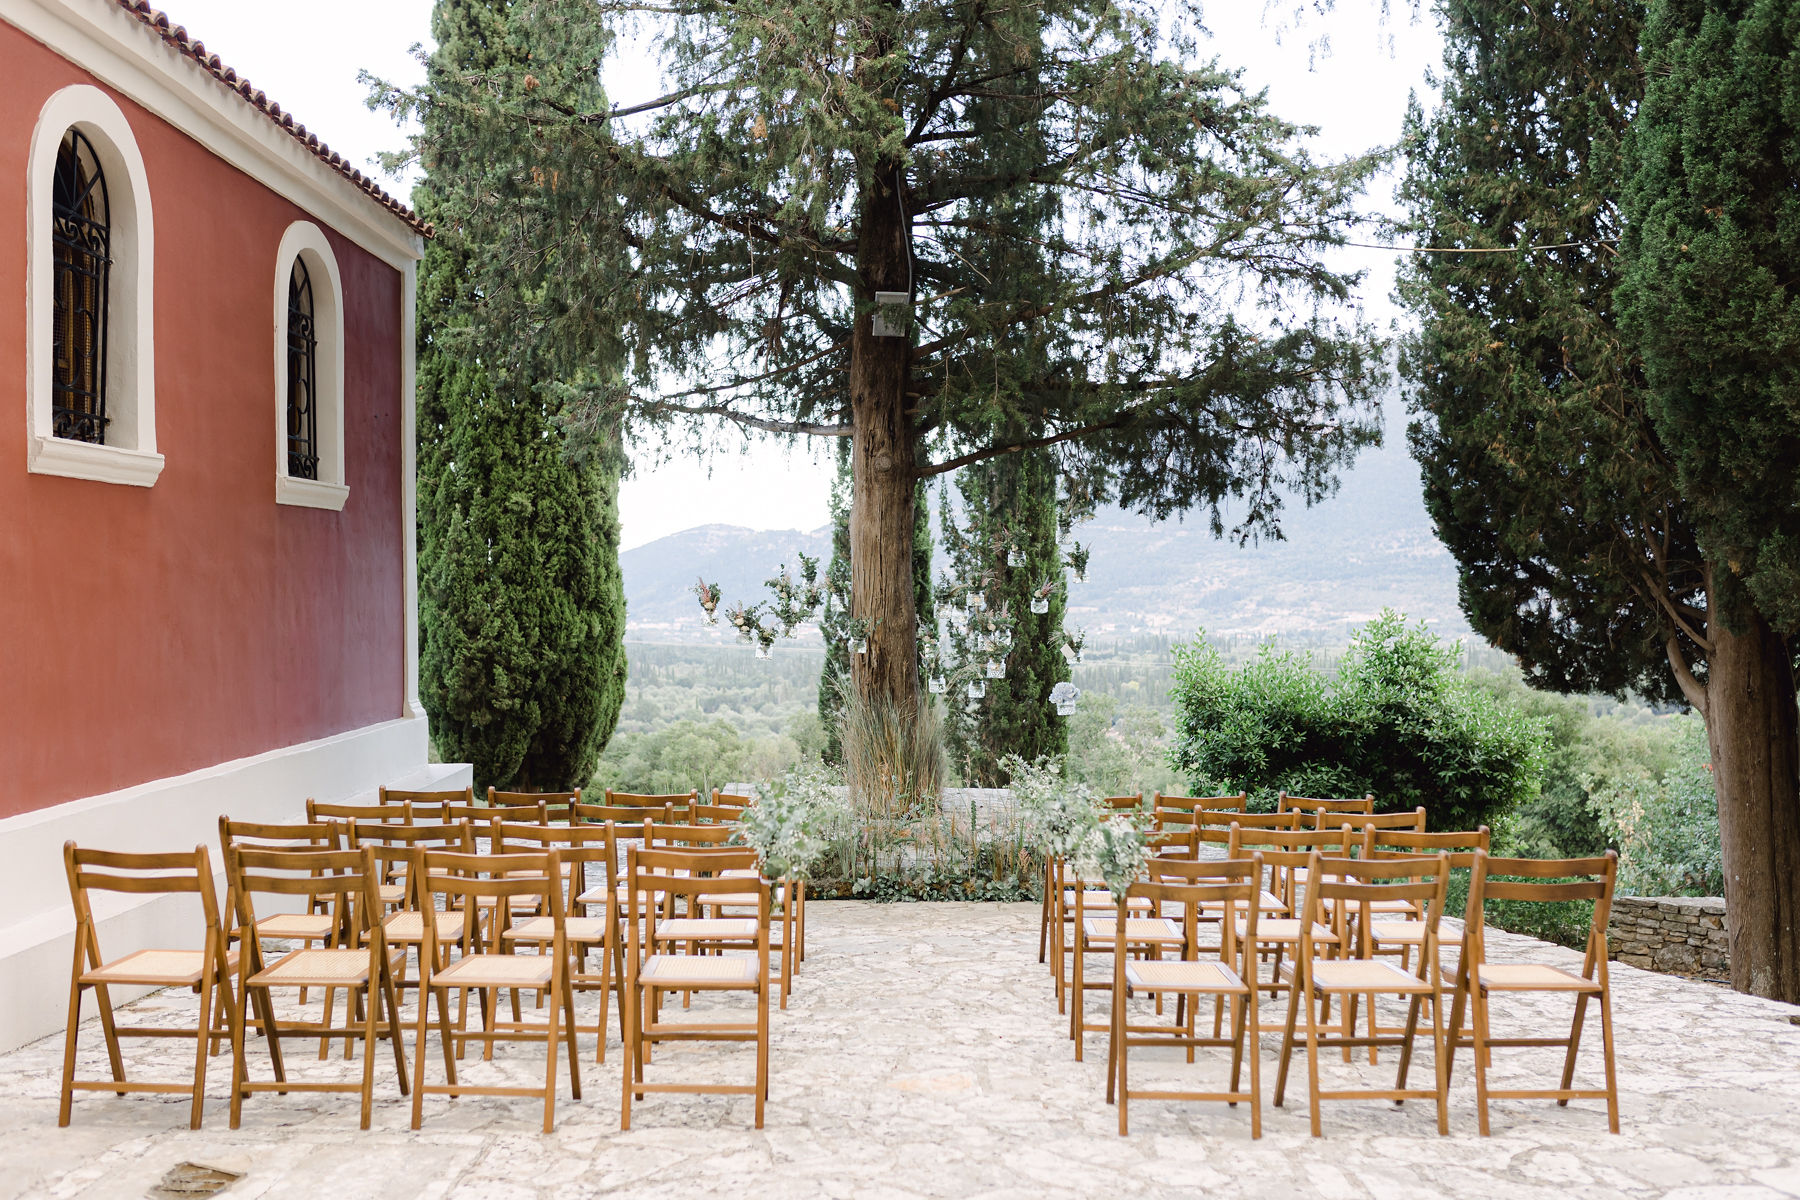 Aufbau einer freien Trauung mit braunen Stühle neben roter Kapelle und zwischen Pinienbäumen